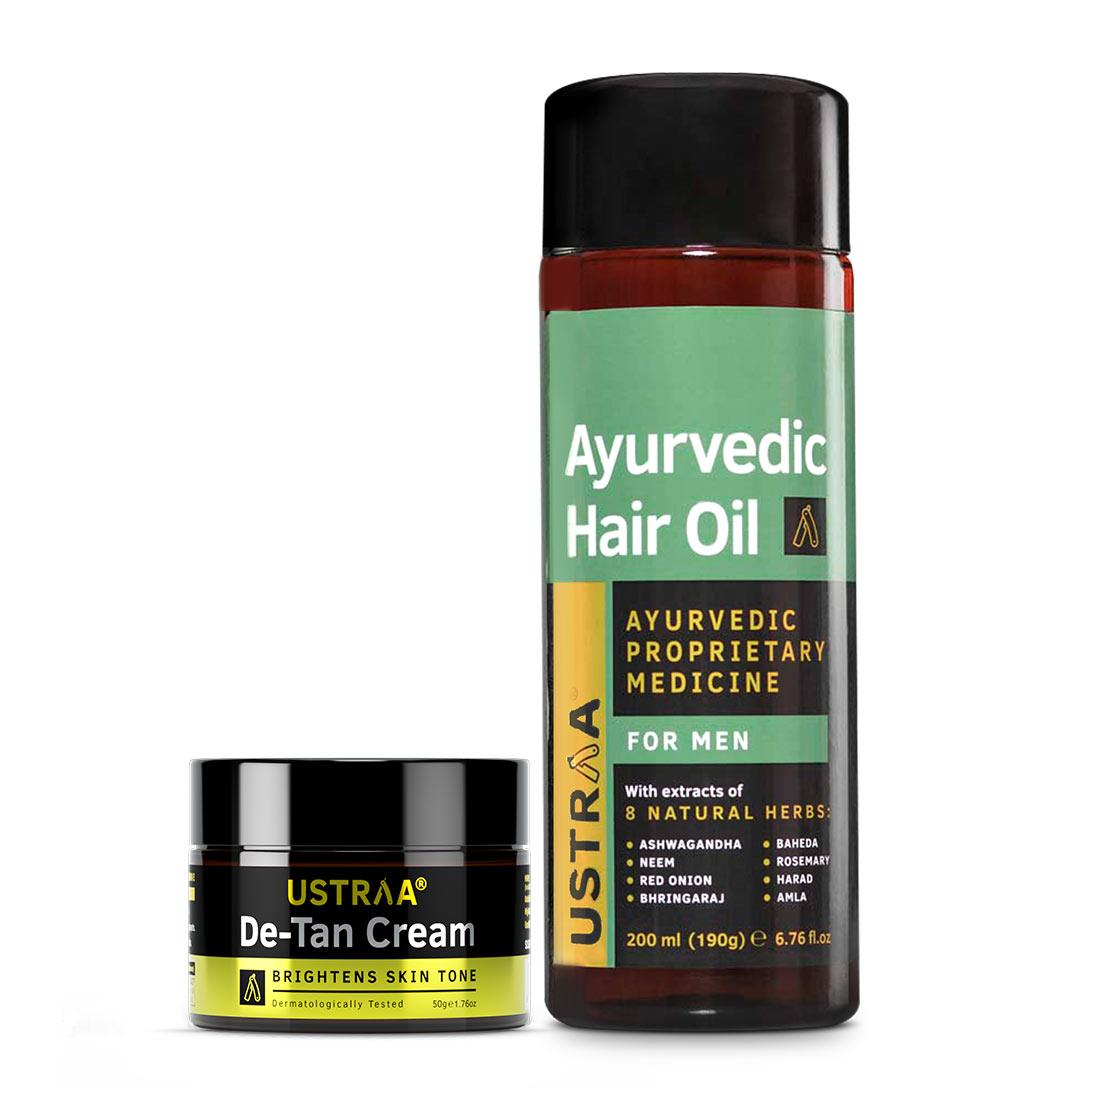 Ayurvedic Hair Oil & De-Tan Cream